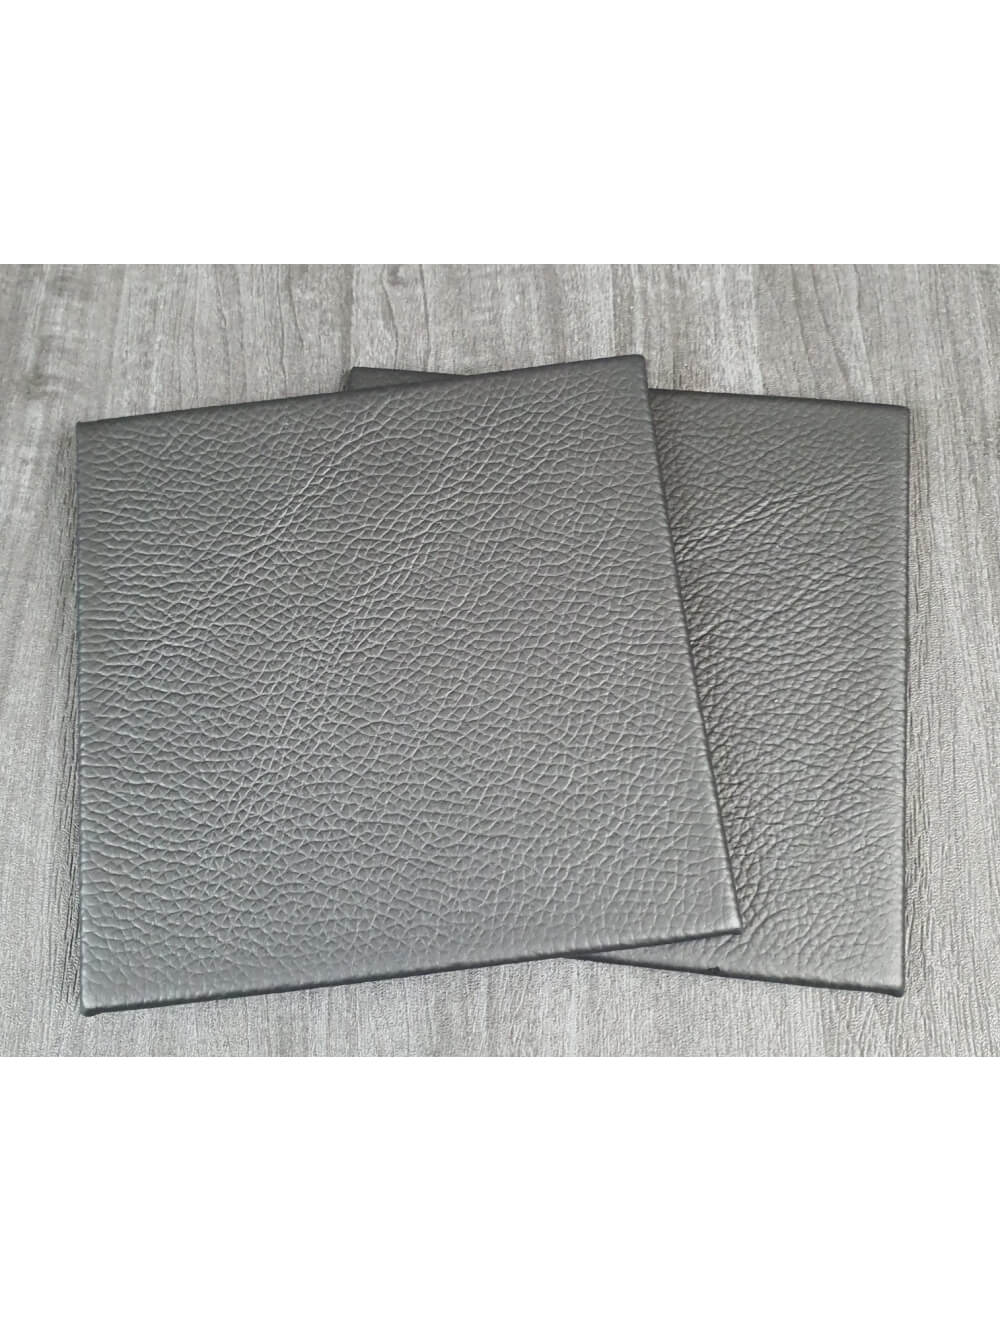 Black Shelly Leather Coaster- 10 cm Sq (articolo di vendita)